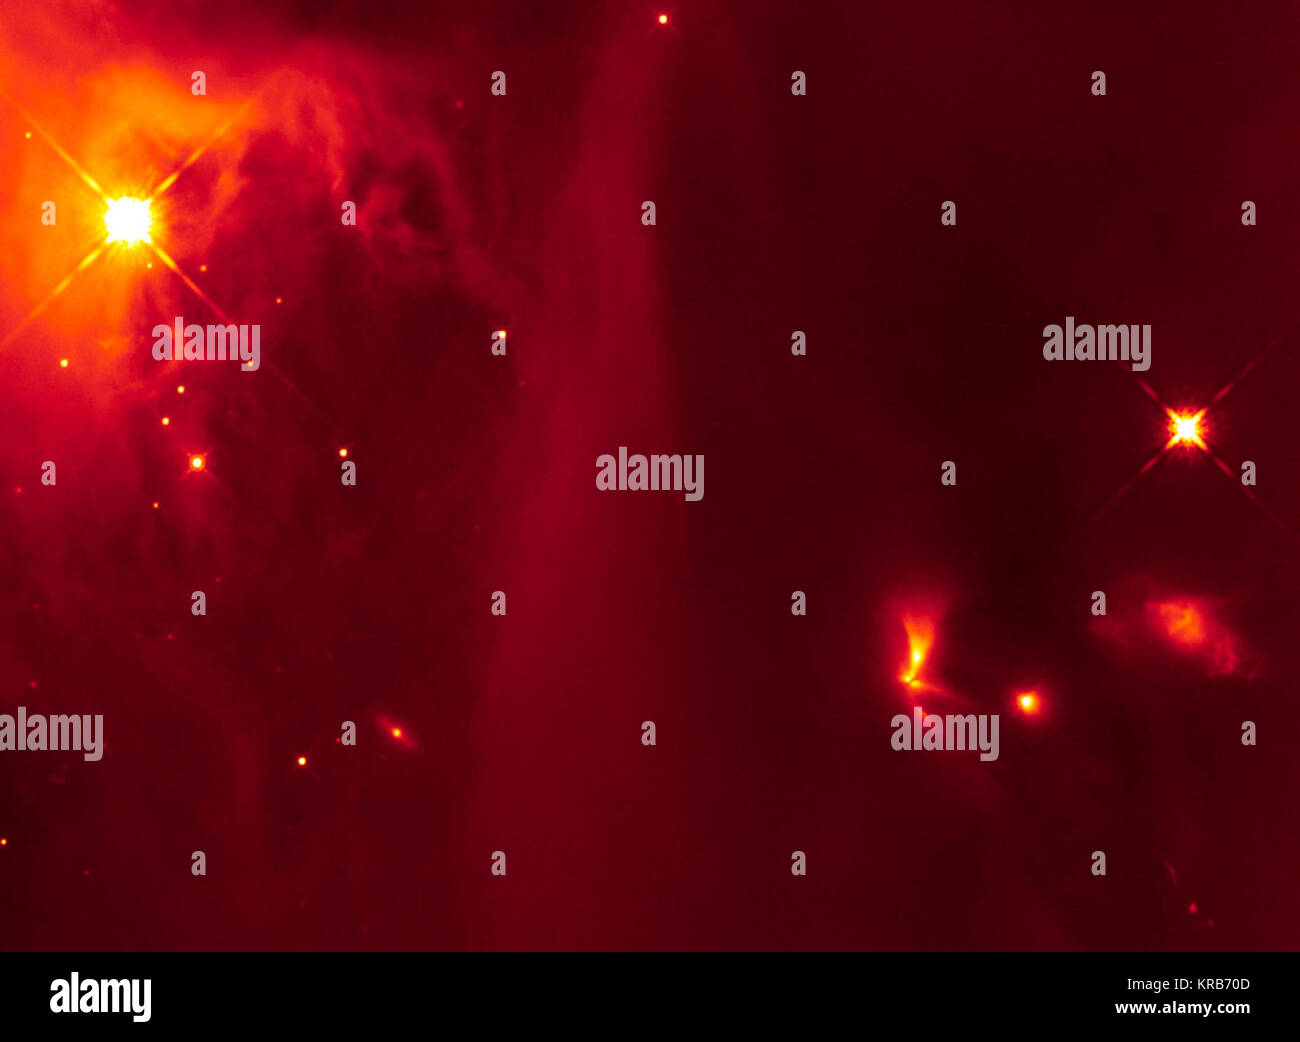 Questa immagine ad infrarossi dalla NASA/ESA Telescopio Spaziale Hubble mostra un'immagine di oggetto protostellar LRLL 54361 e il suo ricco quartiere cosmica, una regione denominata IC 348. Il protostar, che è l'oggetto luminoso con ventola-come fasci di luce provenienti da essa, che si trova verso la parte destra dell'immagine, è lasciare spento lampeggia di luce ogni 25,3 giorni. Immagine di Hubble di LRLL 54361 e i suoi dintorni Foto Stock